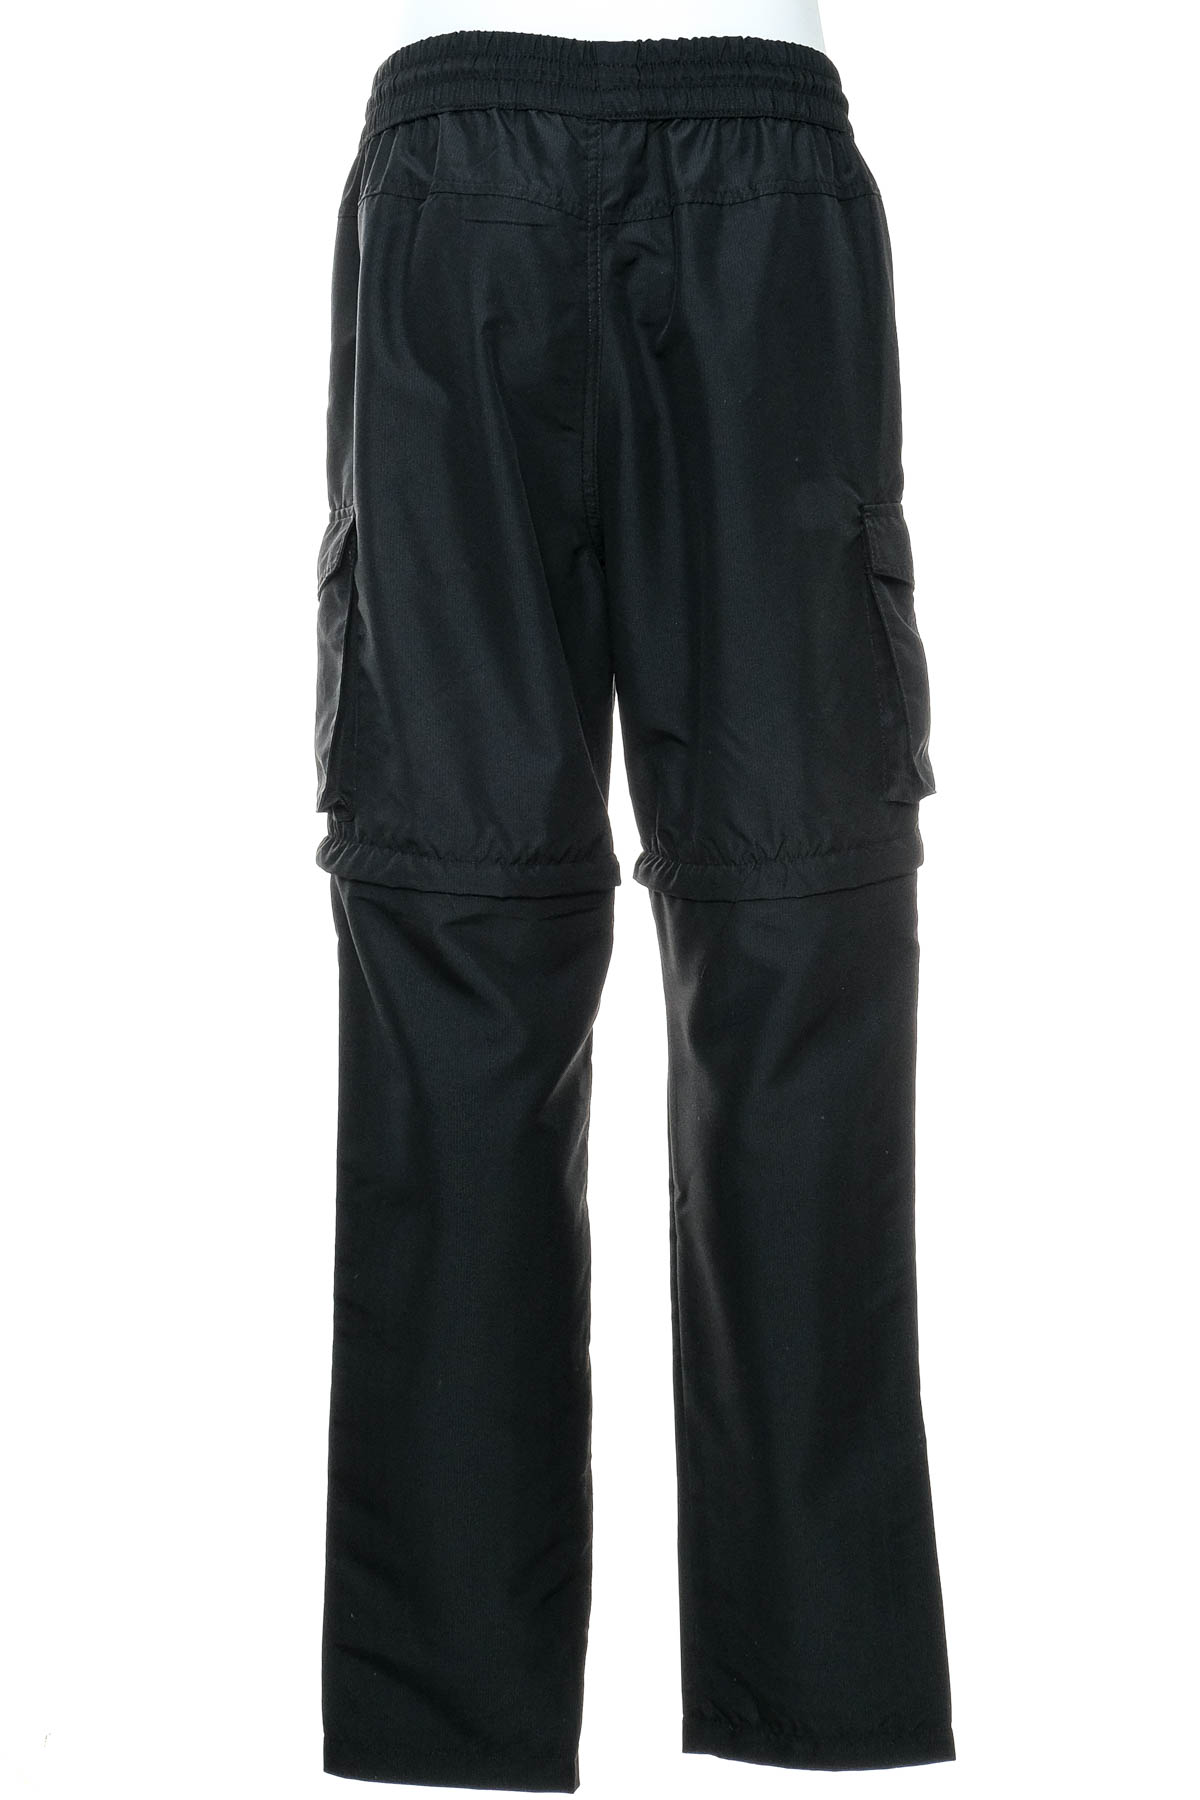 Pantalon pentru bărbați - X-Mail - 1